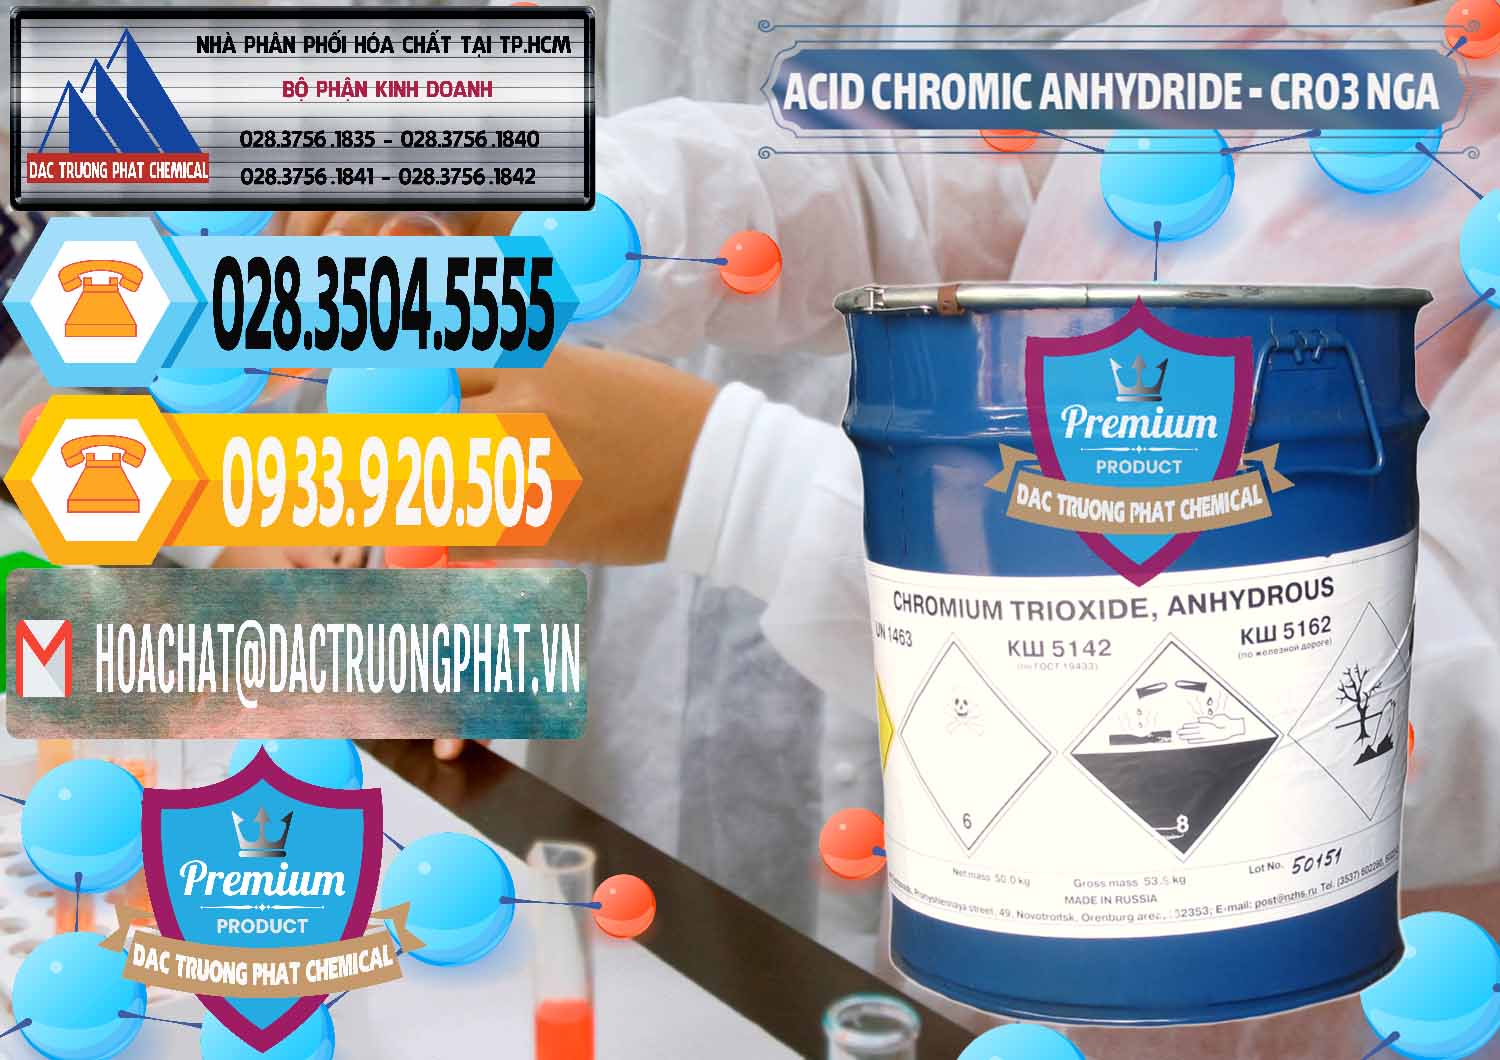 Nơi nhập khẩu - bán Acid Chromic Anhydride - Cromic CRO3 Nga Russia - 0006 - Phân phối - kinh doanh hóa chất tại TP.HCM - hoachattayrua.net